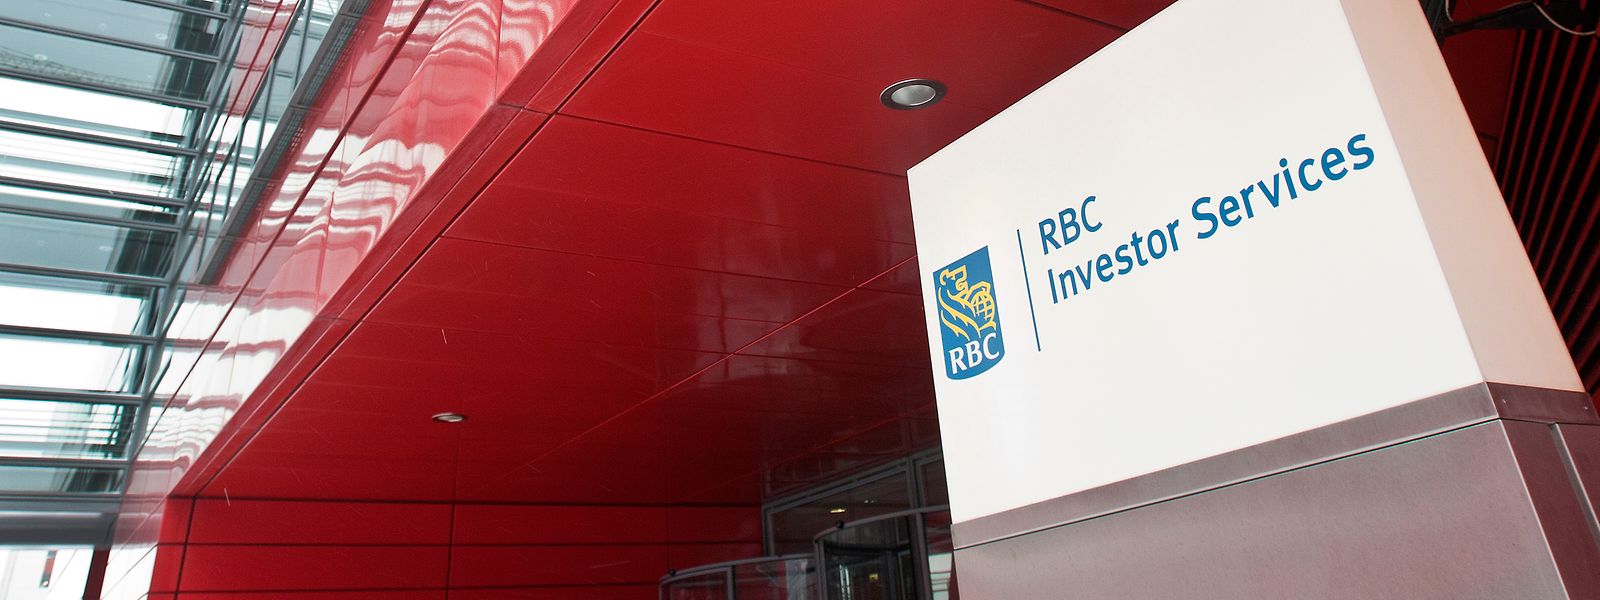 Die Royal Bank of Canada beschäftigt in Luxemburg rund 1100 Personen.